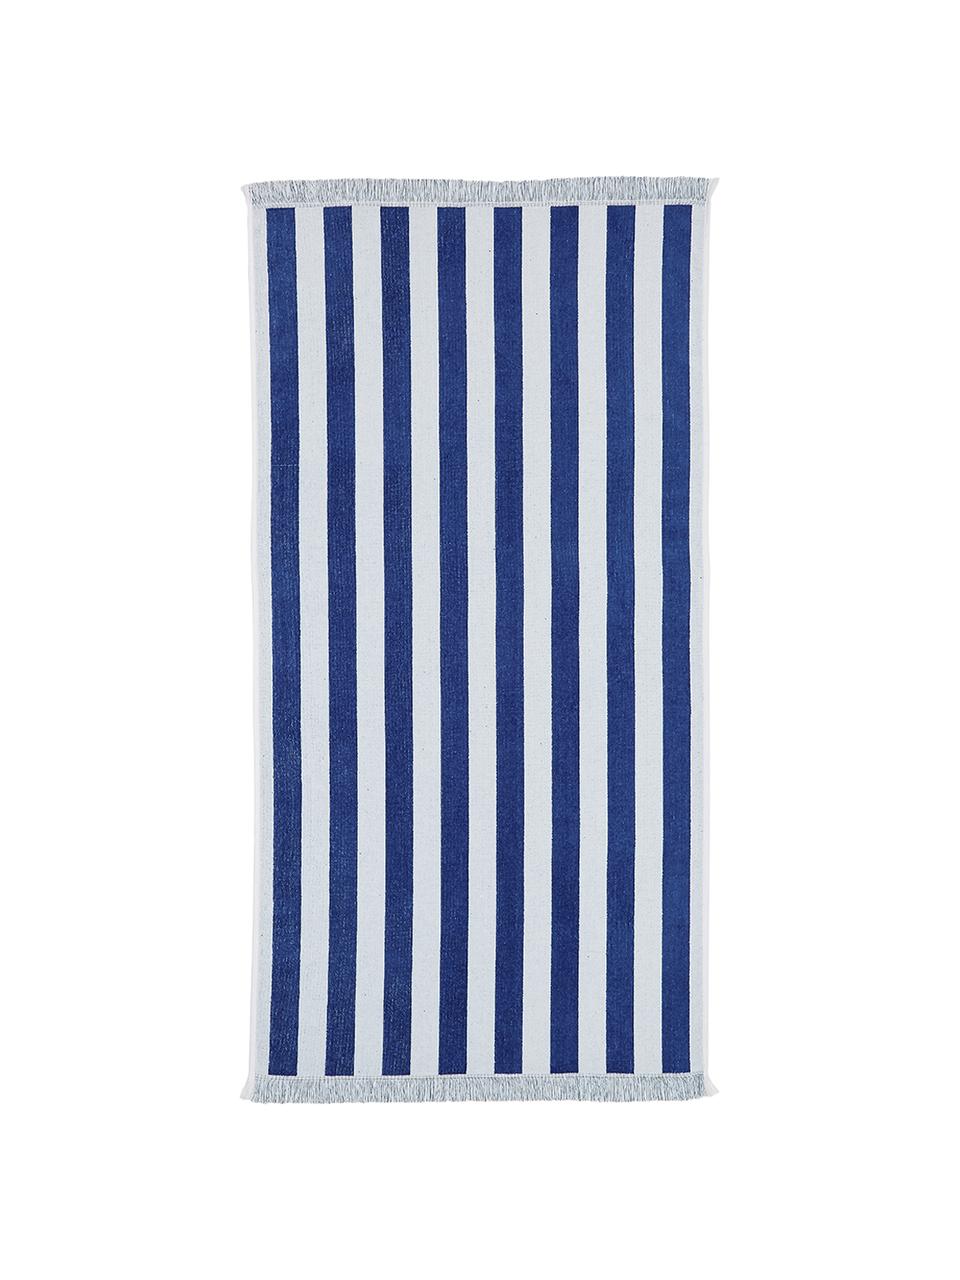 Ręcznik plażowy z frędzlami Mare, 100% bawełna
Niska gramatura 380 g/m², Niebieski, biały, S 80 x D 160 cm